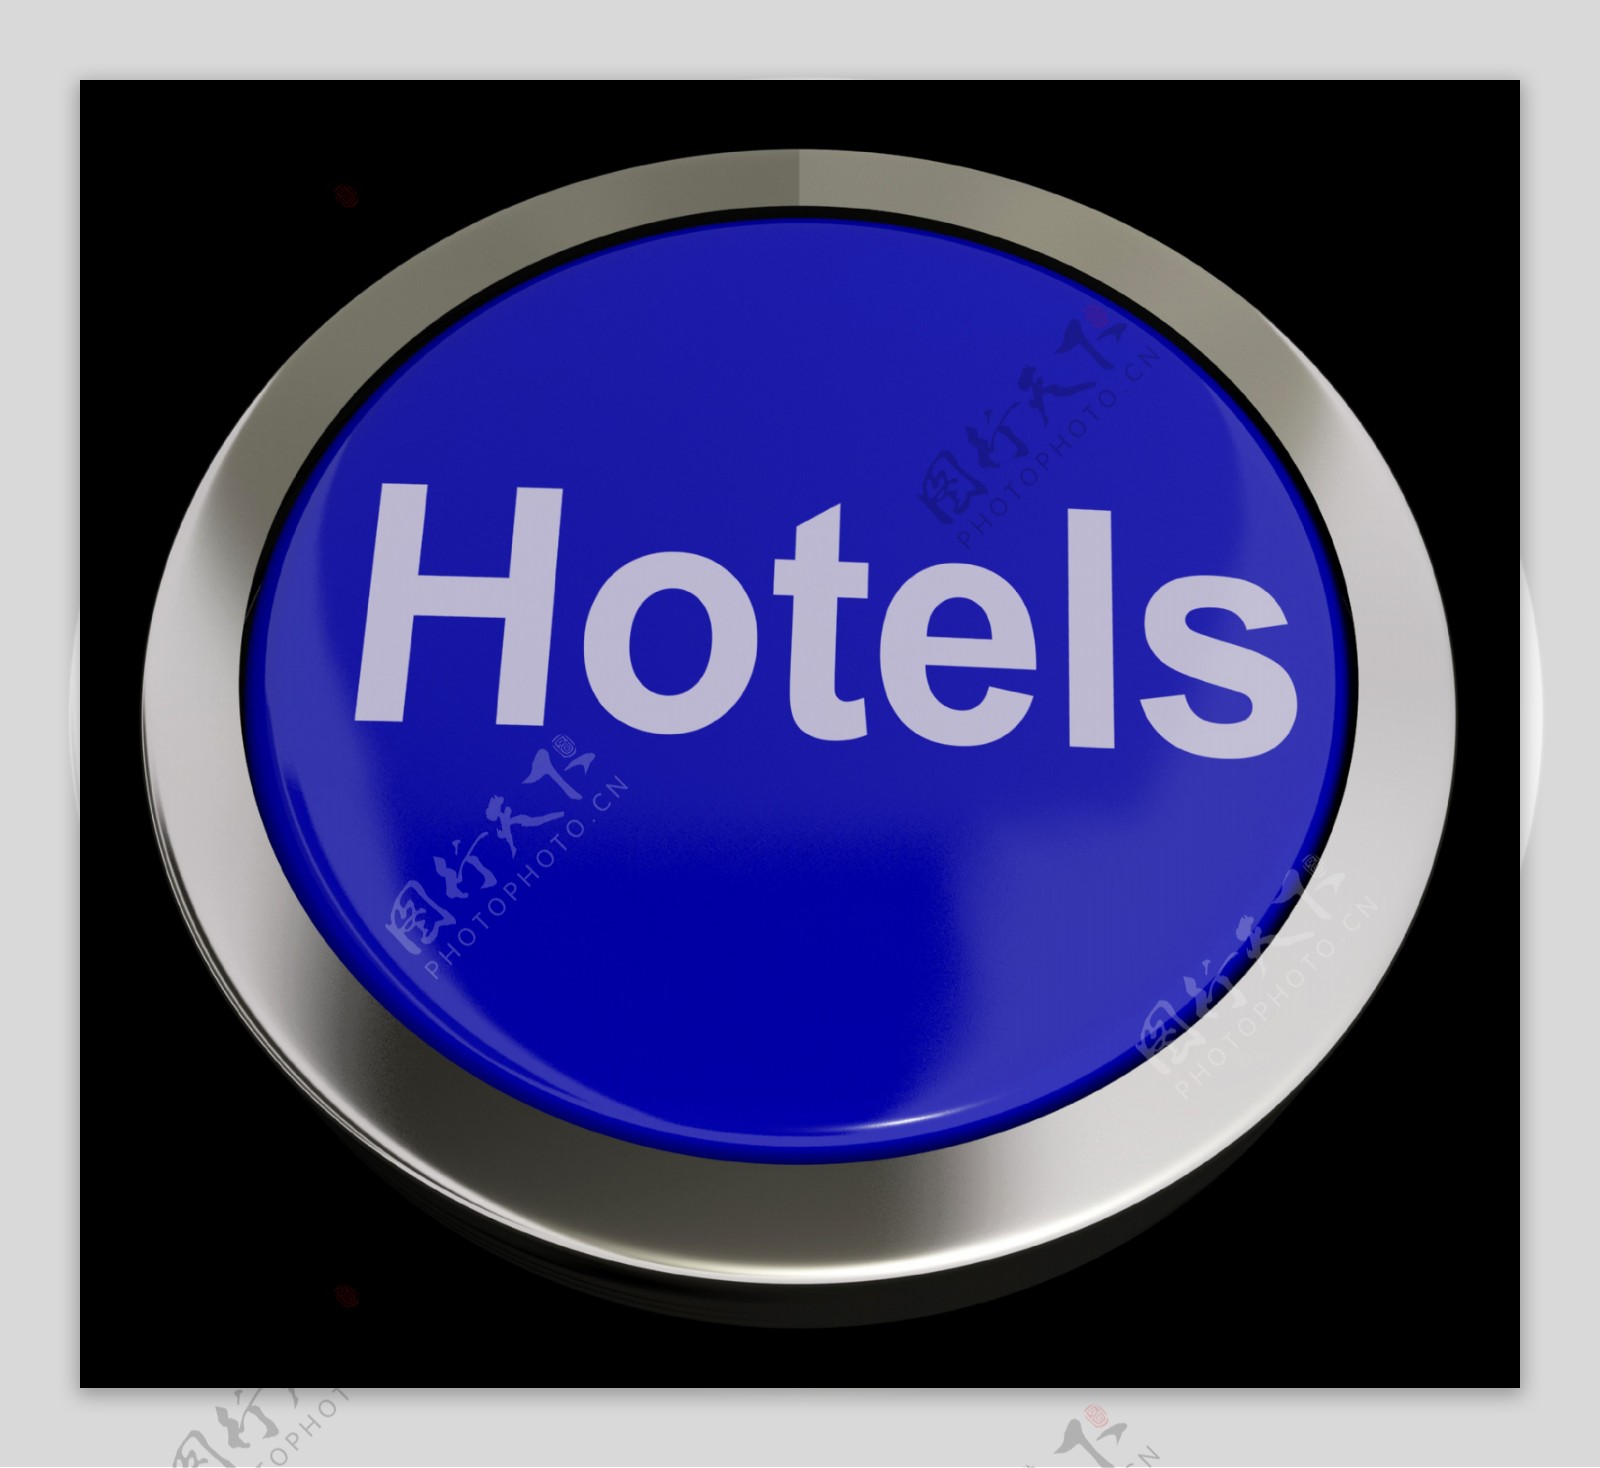 旅游和酒店房间的蓝色按钮